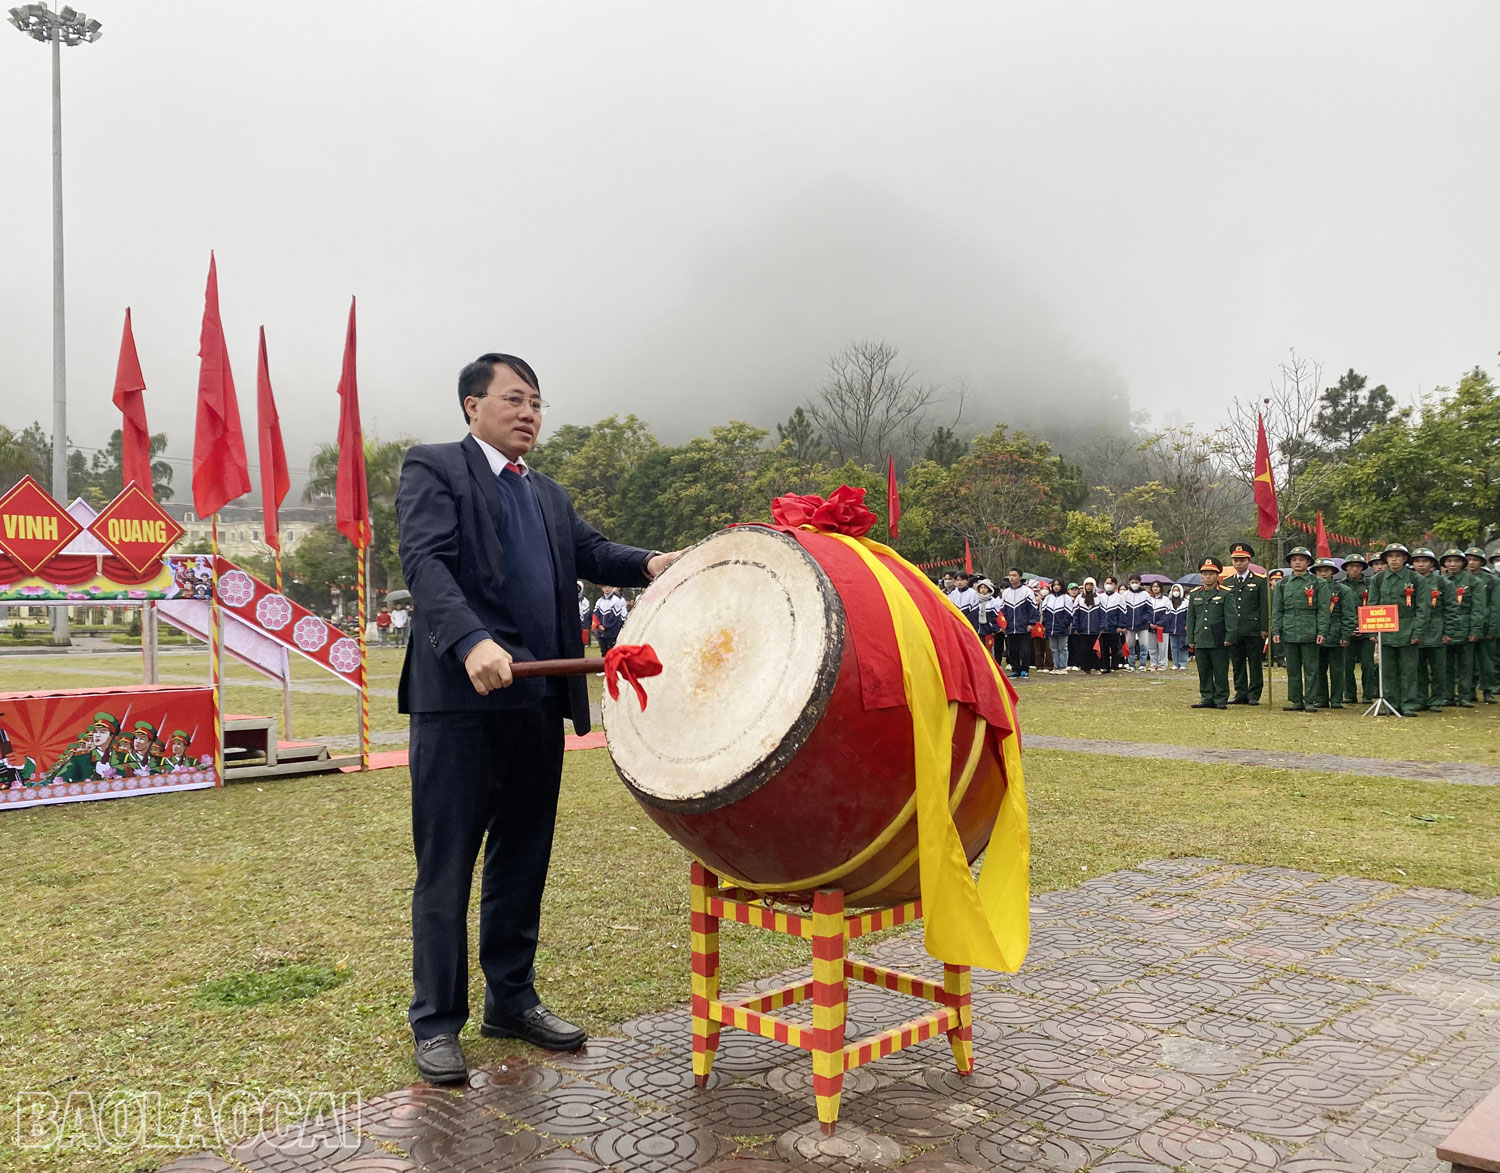 Đồng chí Hoàng Văn Dương, Phó Bí thư Huyện ủy, Chủ tịch UBND huyện, Chủ tịch hội đồng nghĩa vụ quân sự huyện Si Ma Cai đánh trống mở hội giao quân.